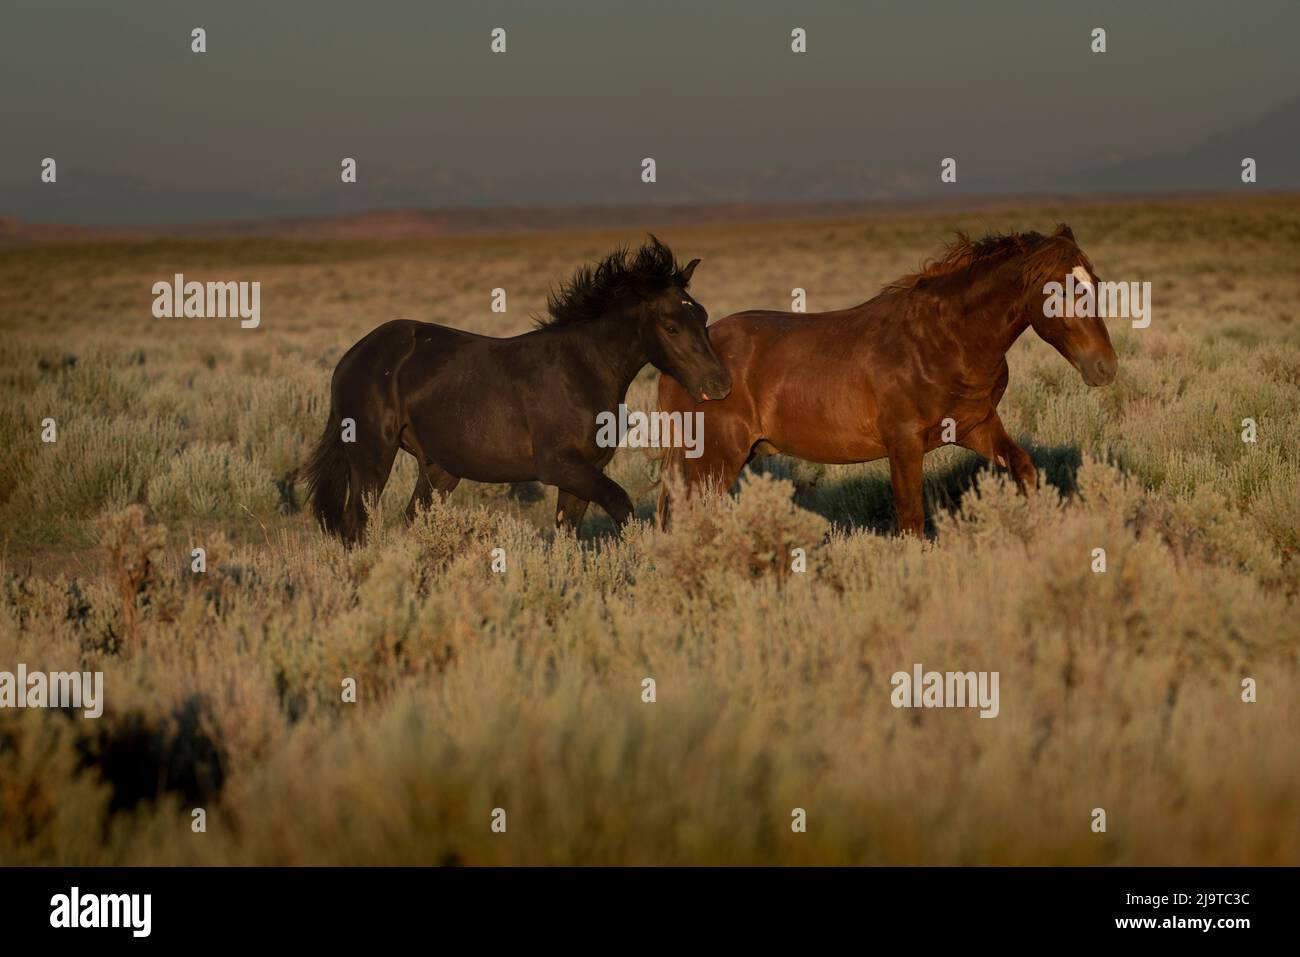 États-Unis, Wyoming. Des chevaux sauvages sillonnant la sauge du désert à l'approche d'une tempête. Banque D'Images